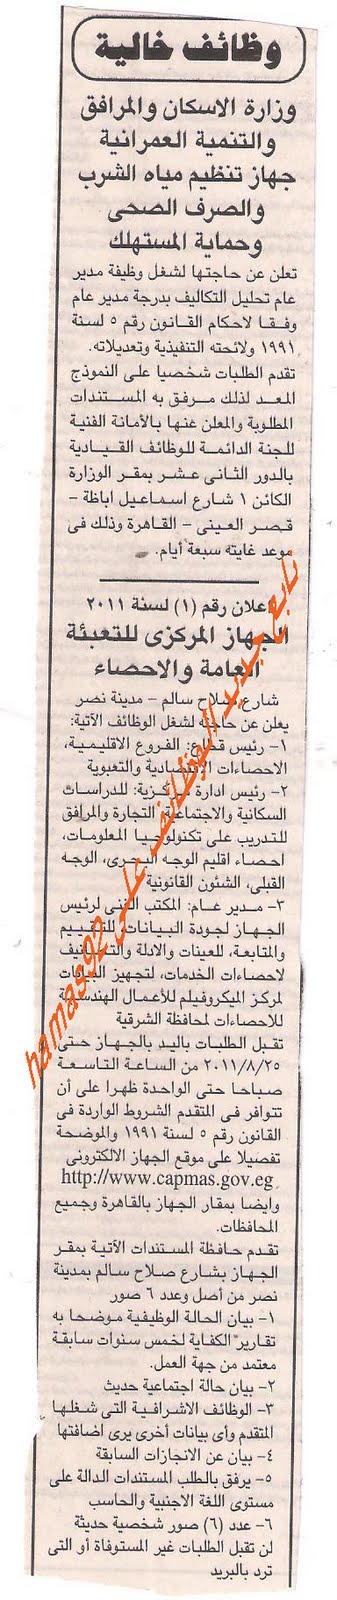 وظائف خالية من جريدة الجمهورية الثلاثاء 16 اغسطس 2011 Picture